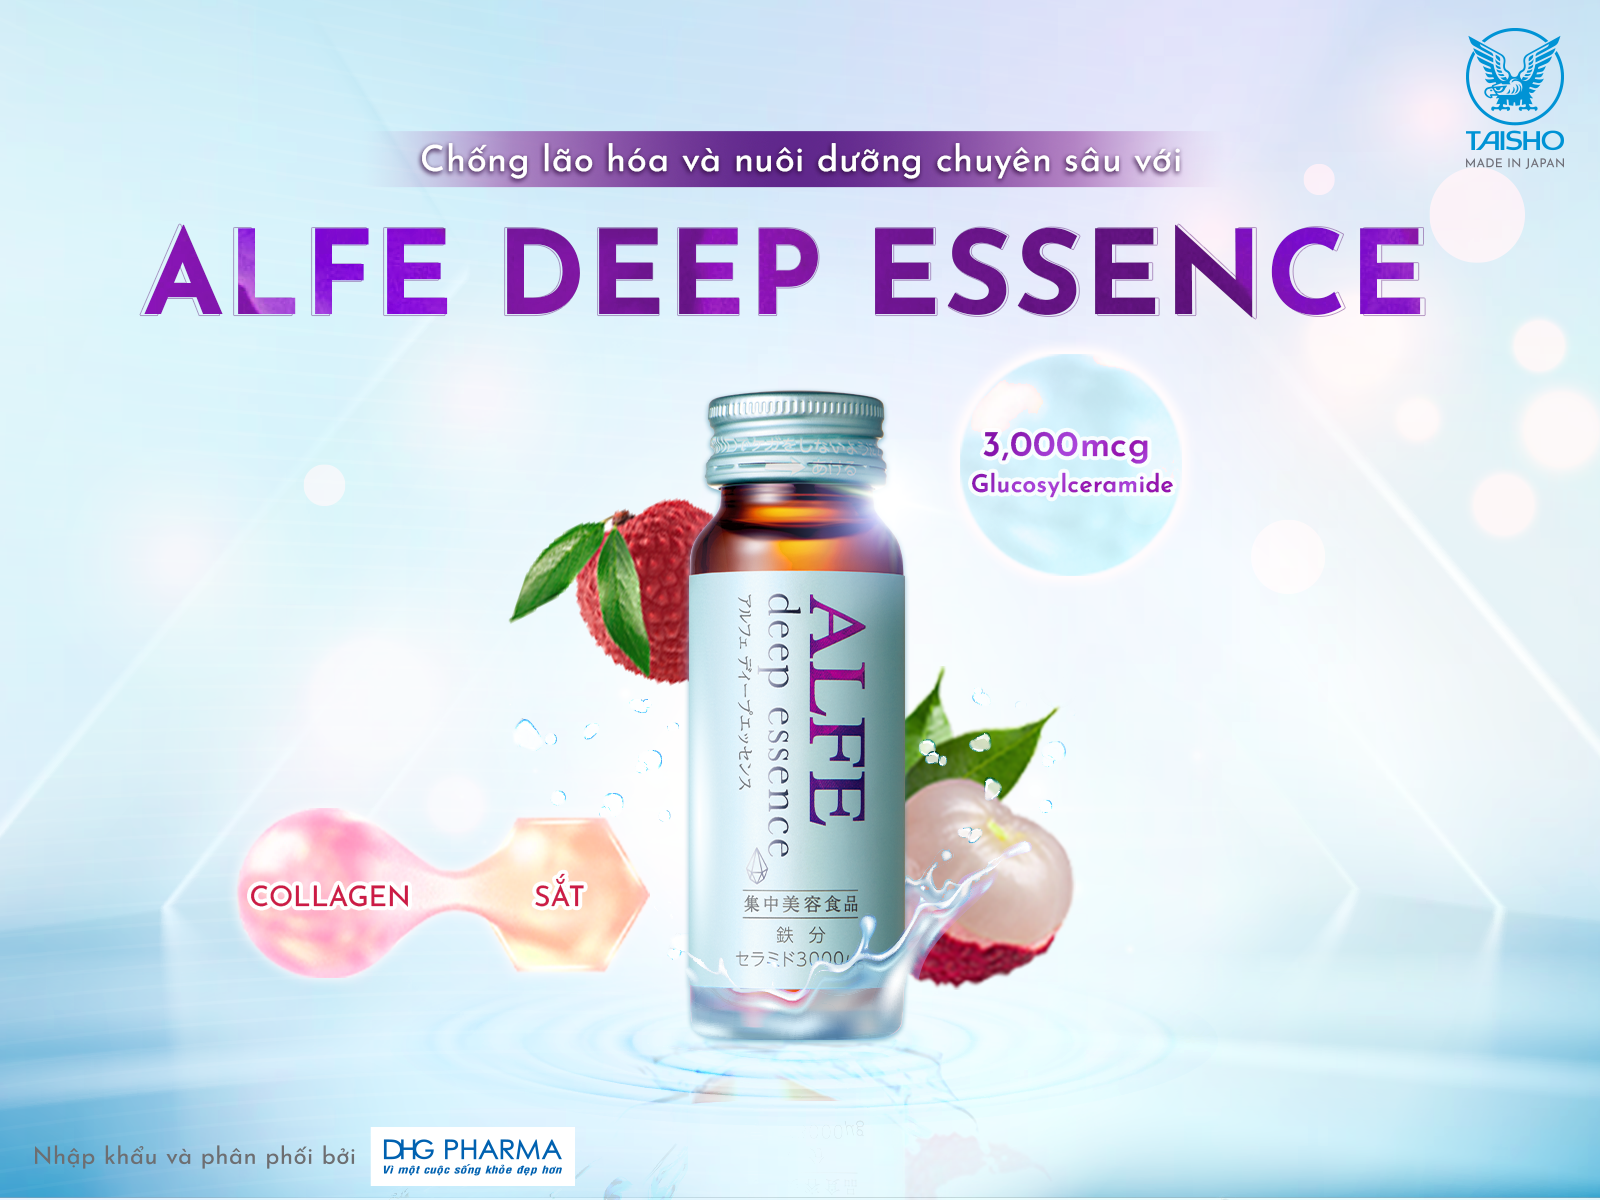 Cân bằng ẩm cho làn da khô với Collagen nước ALFE Deep Essence - Alfe